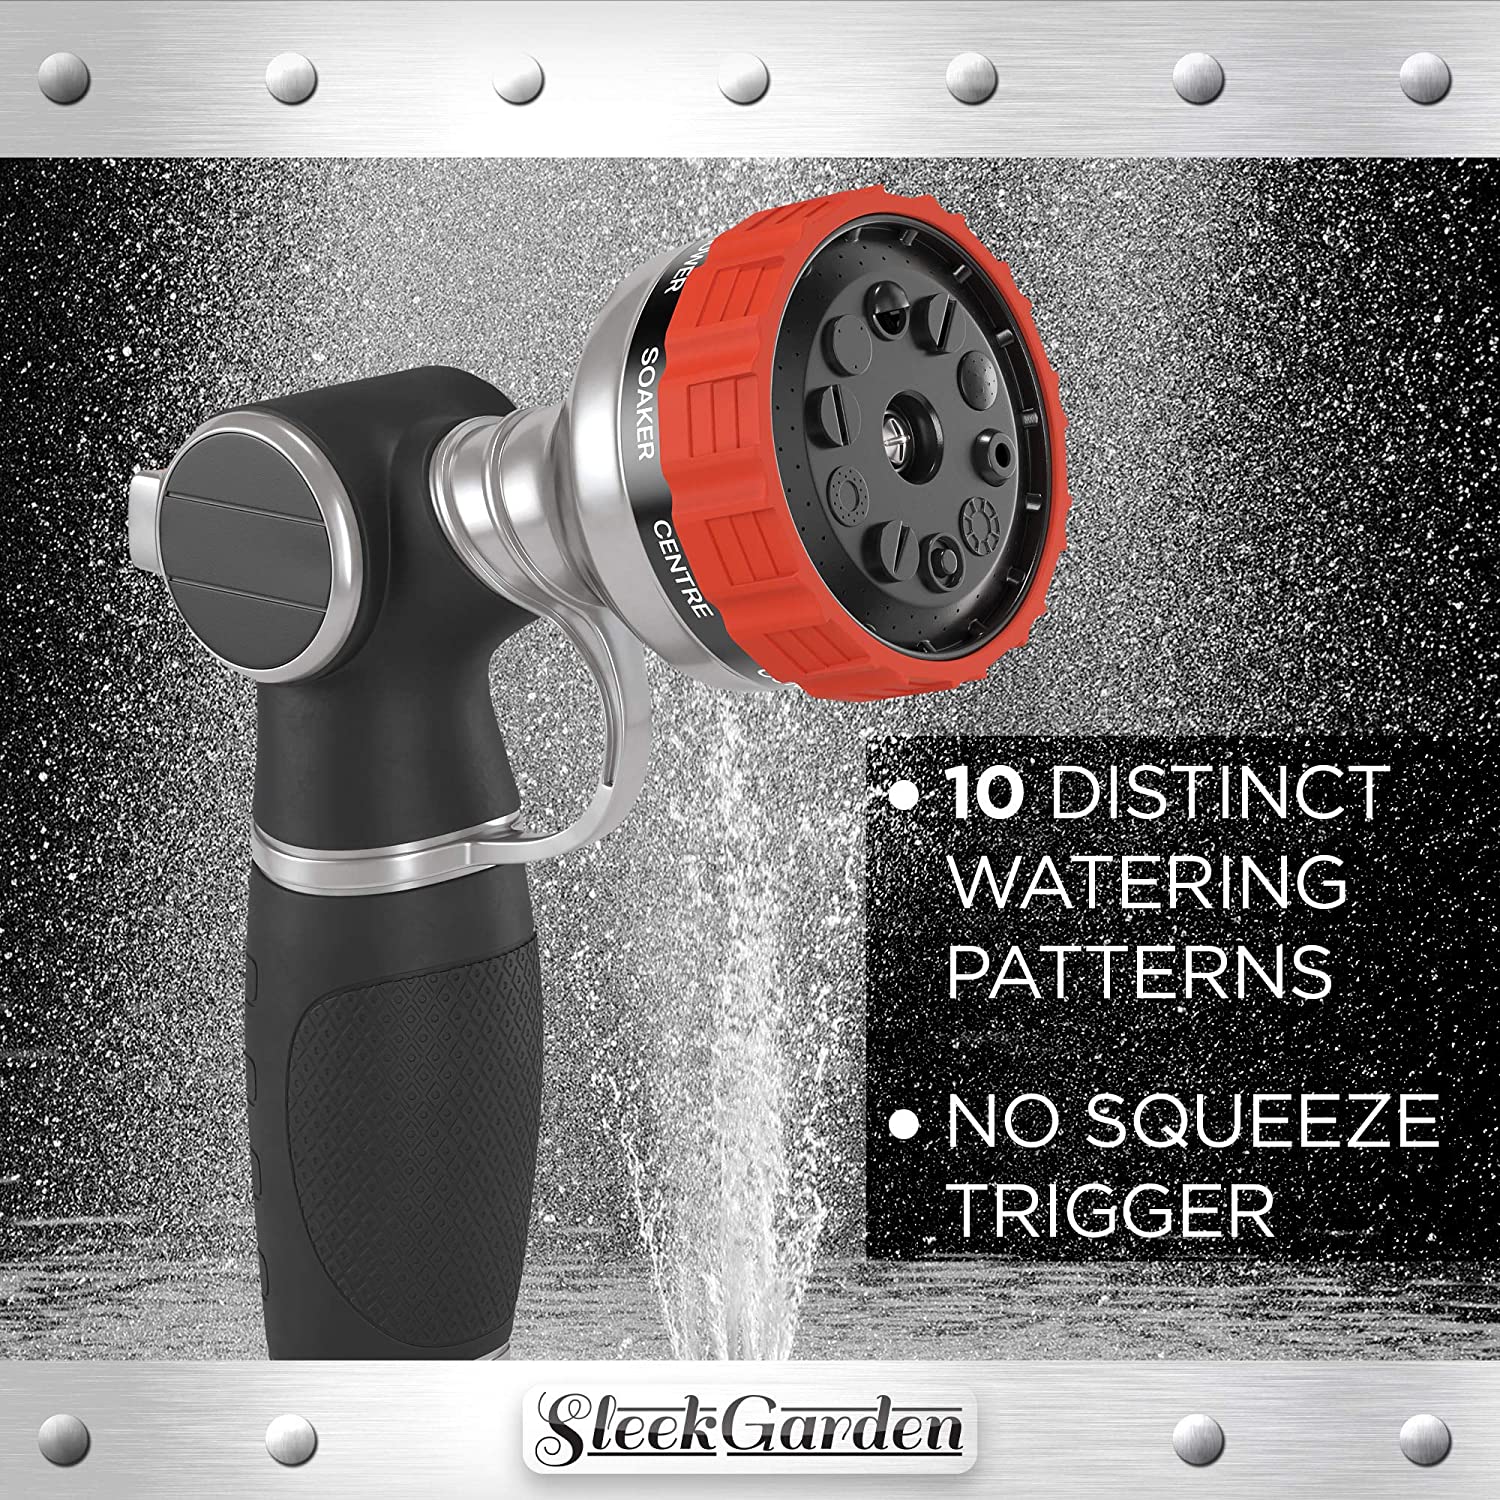 Sleek Garden Heavy Duty Garden Hose Nozzle Hand Sprayer with 9 Adjustable Spray Patterns, Red